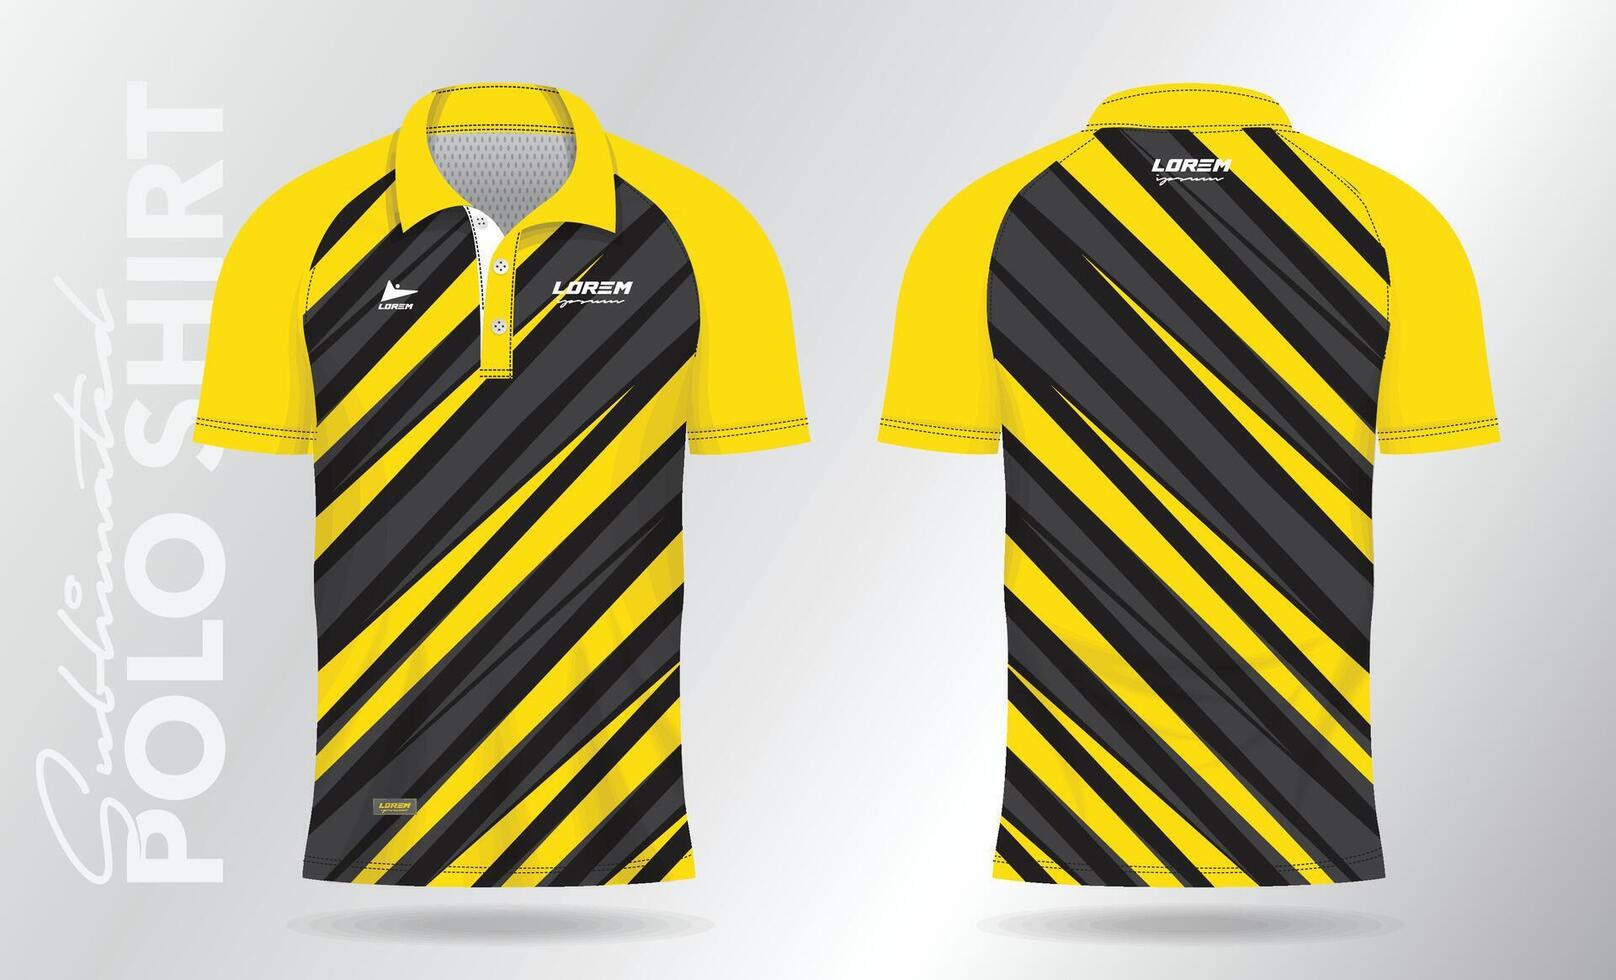 Gelb Polo Hemd Jersey Attrappe, Lehrmodell, Simulation Vorlage Design. Sport Uniform im Vorderseite Sicht, zurück Sicht. vektor